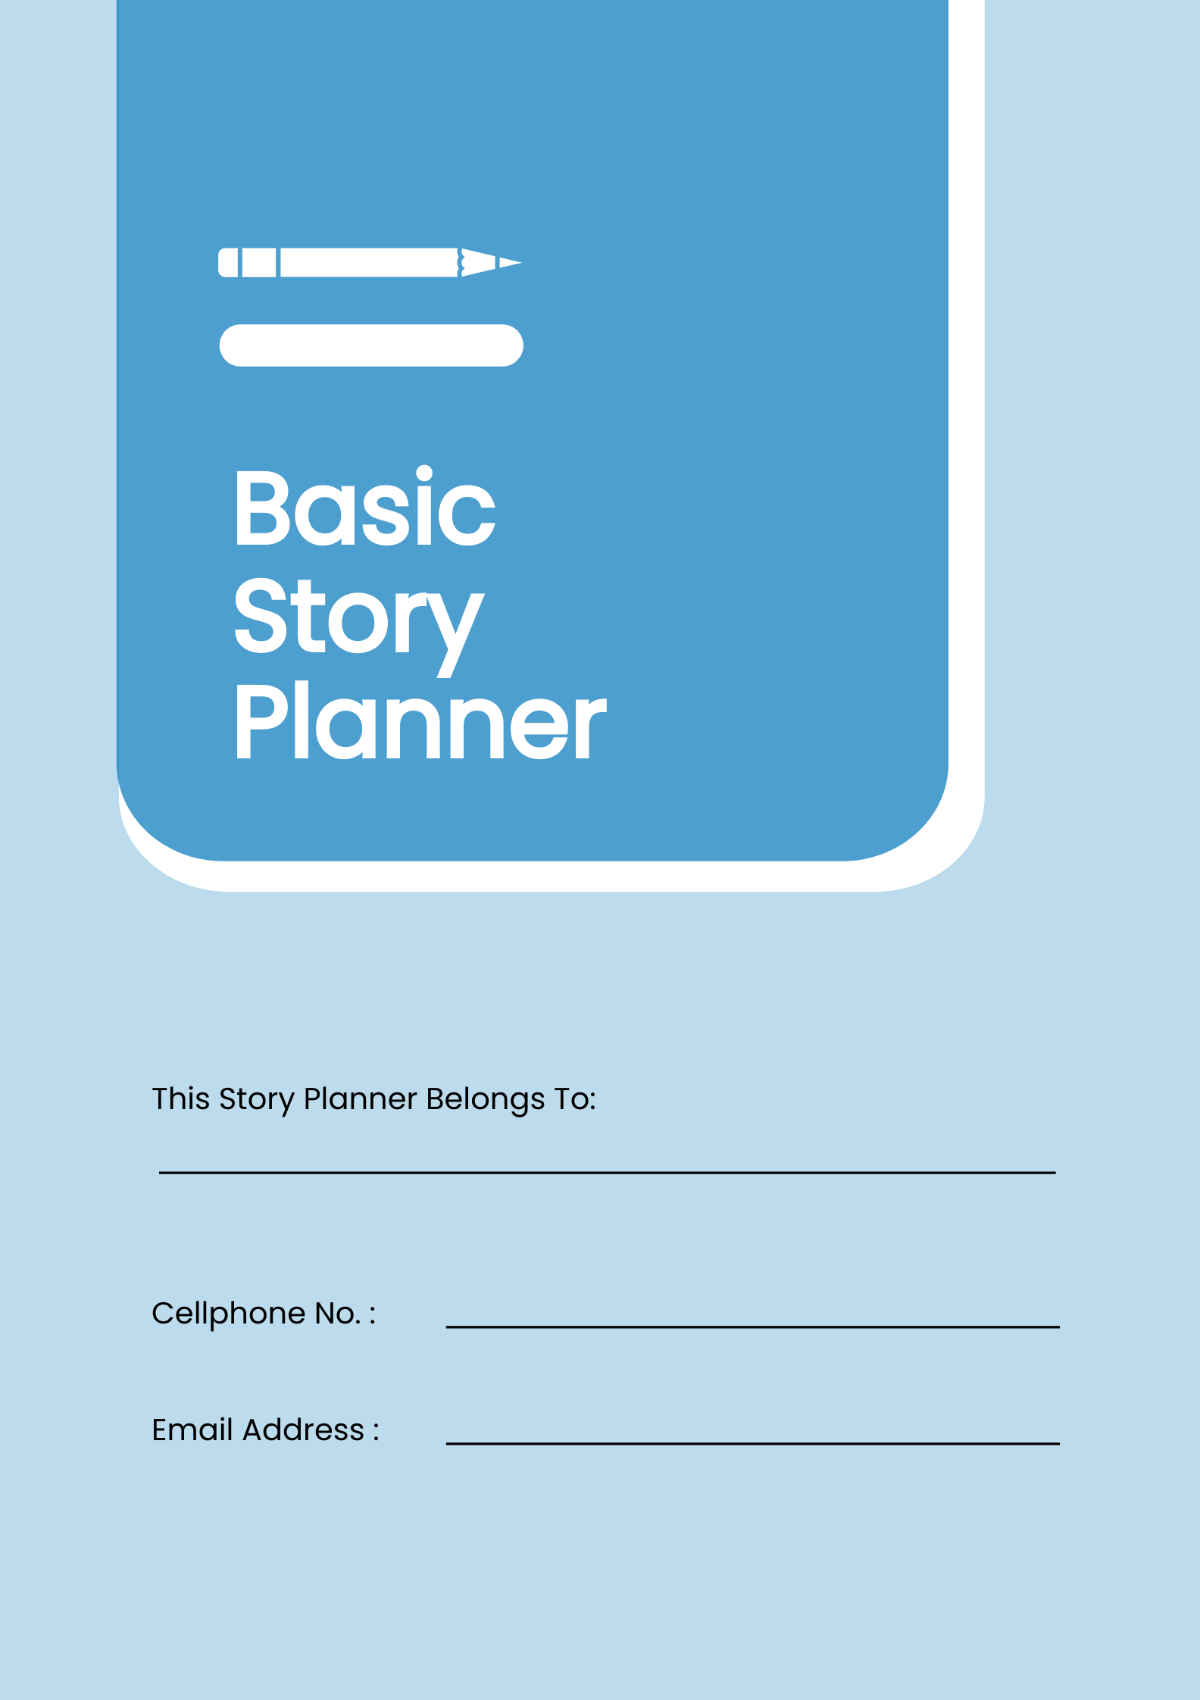 Basic Story Planner